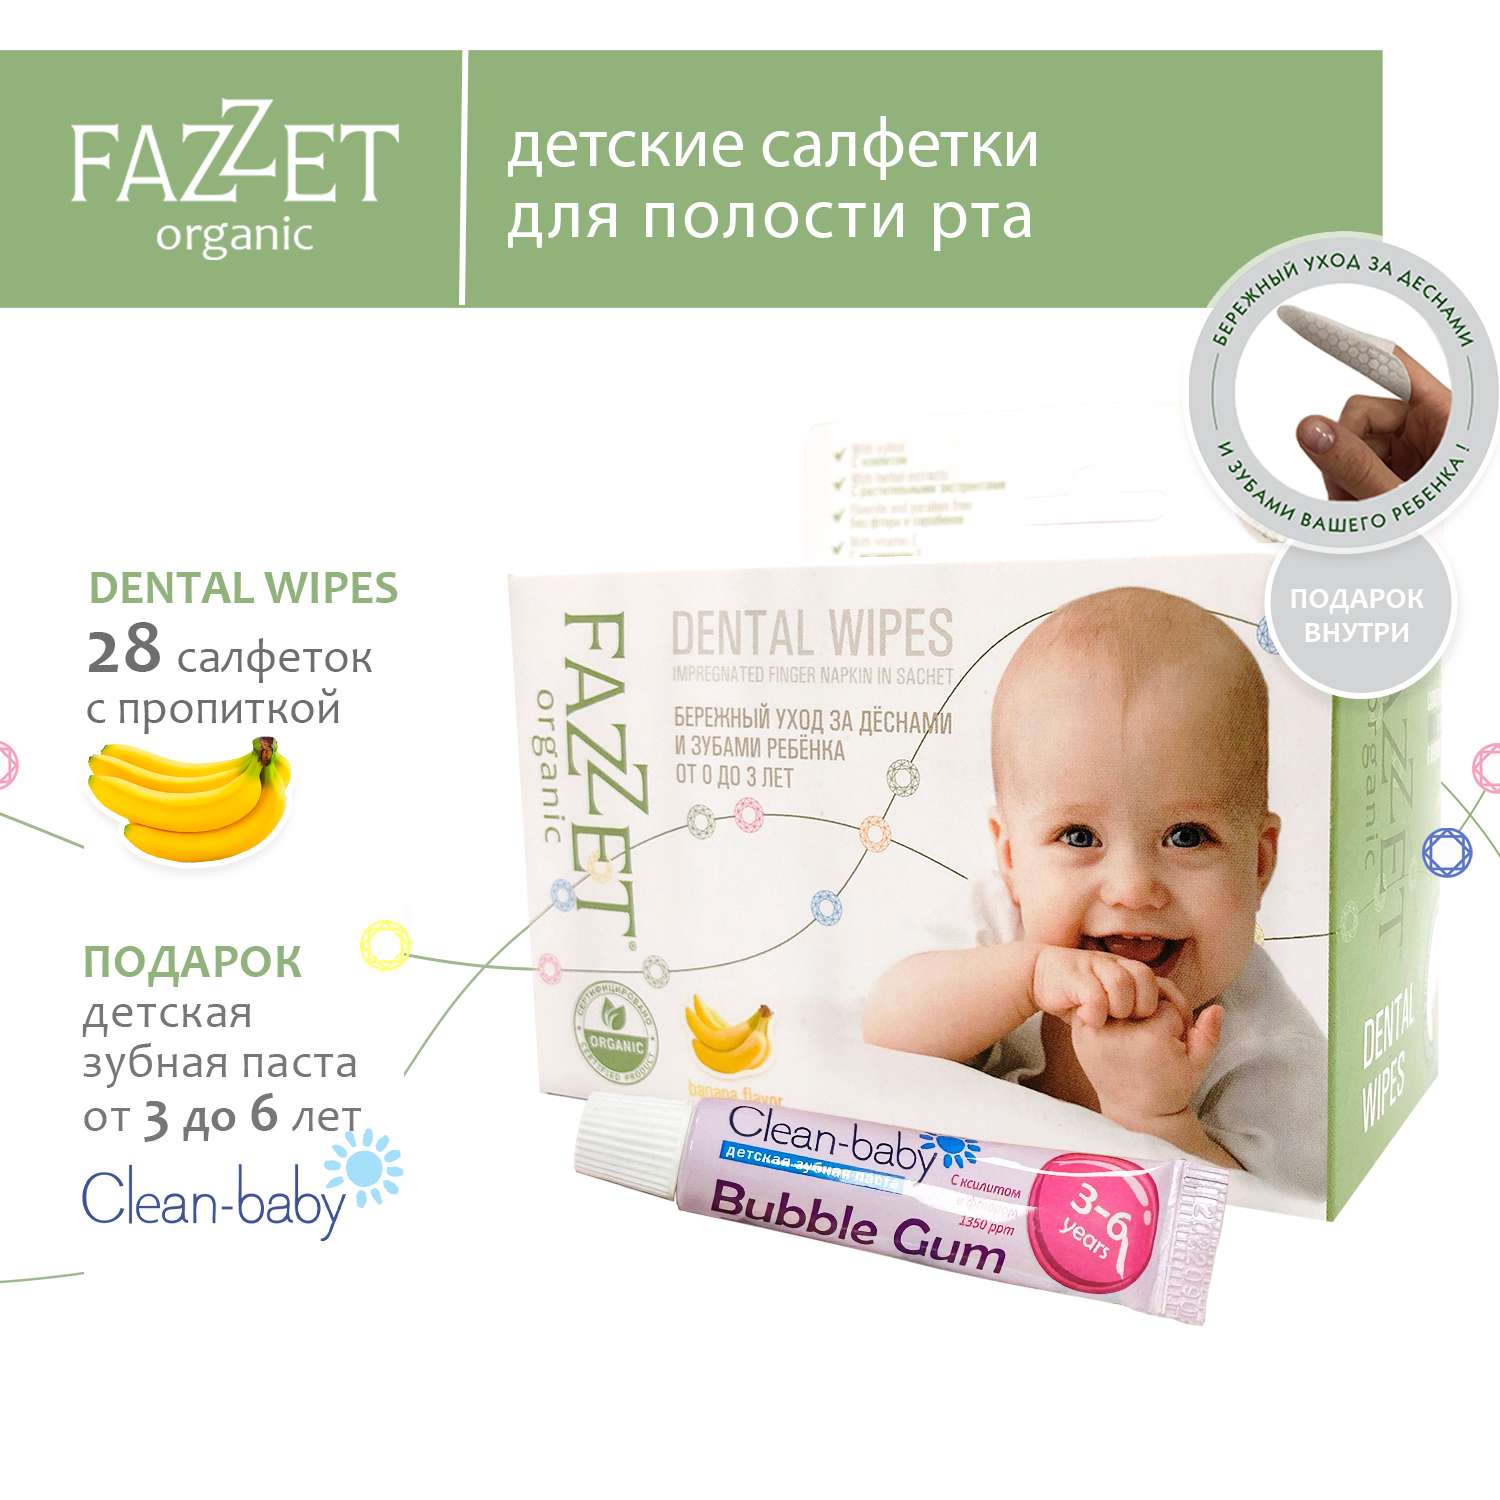 Детские салфетки Fazzet ORGANIC для полости рта 0-3 года 28 шт и подарок зубная паста Clean-baby 3-6 лет 5 мл - фото 2